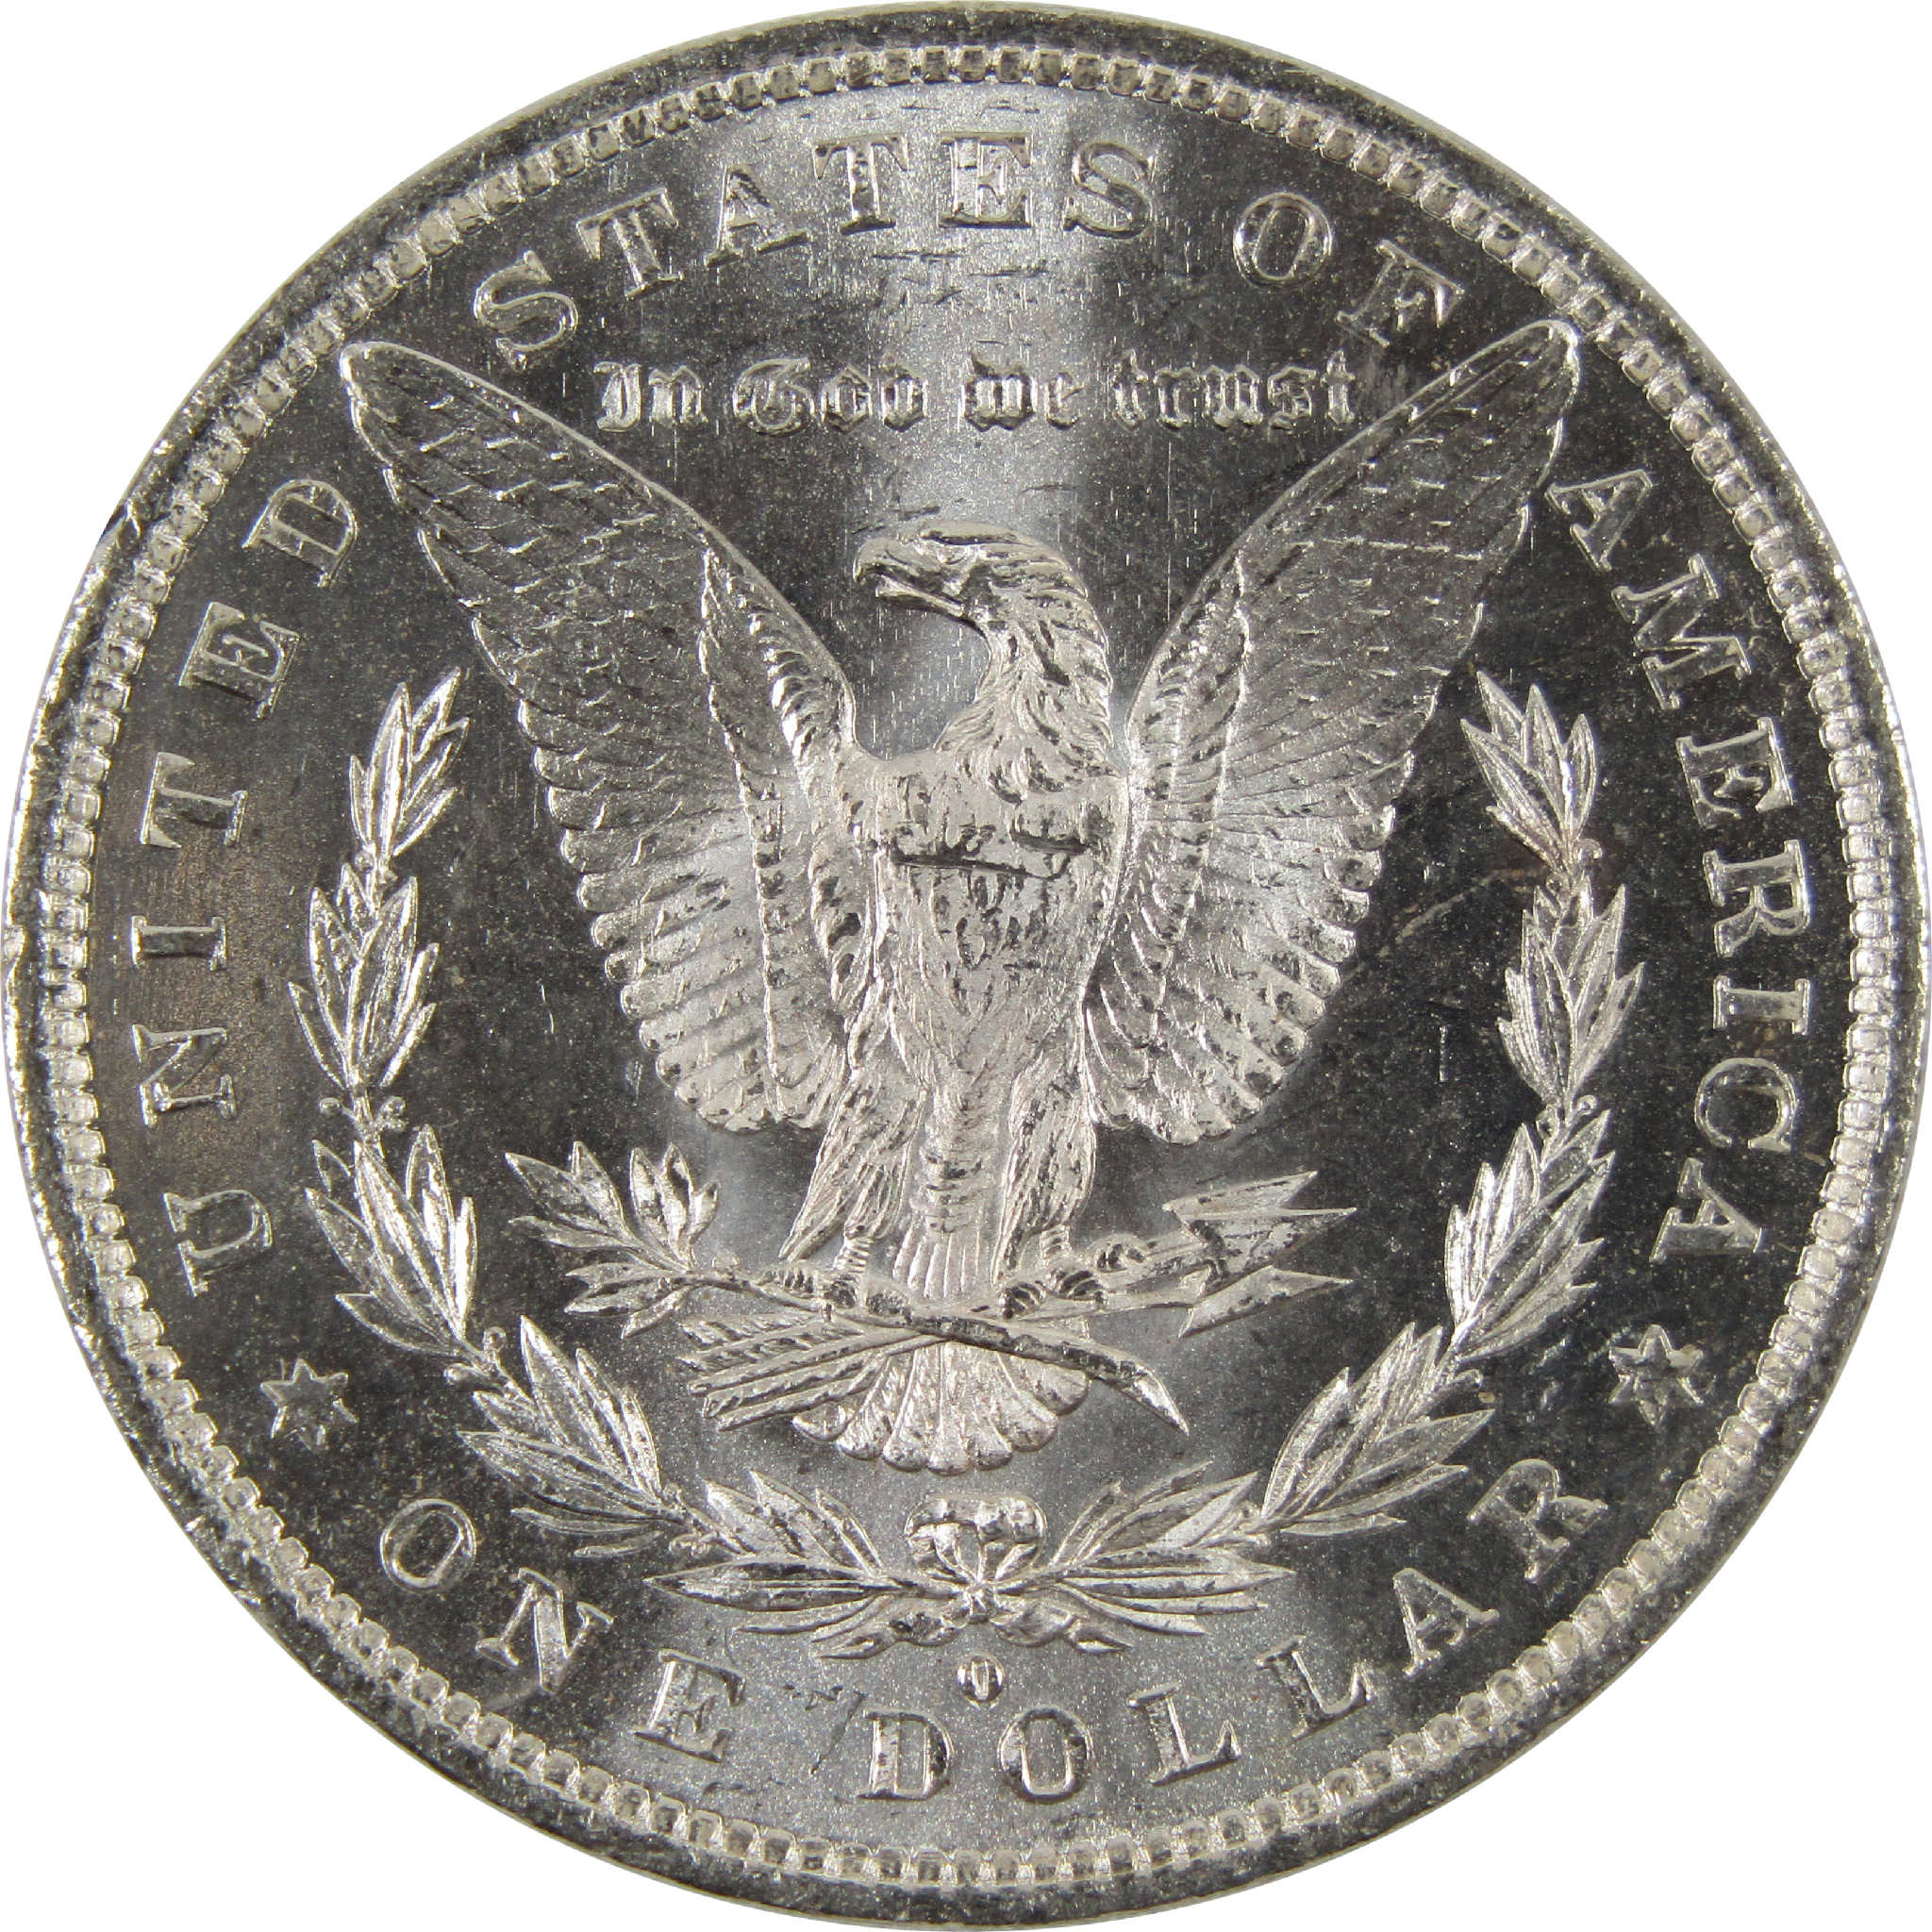 1882 O Morgan Dollar BU Uncirculated 90% Silver $1 Coin SKU:I8917 - Morgan coin - Morgan silver dollar - Morgan silver dollar for sale - Profile Coins &amp; Collectibles